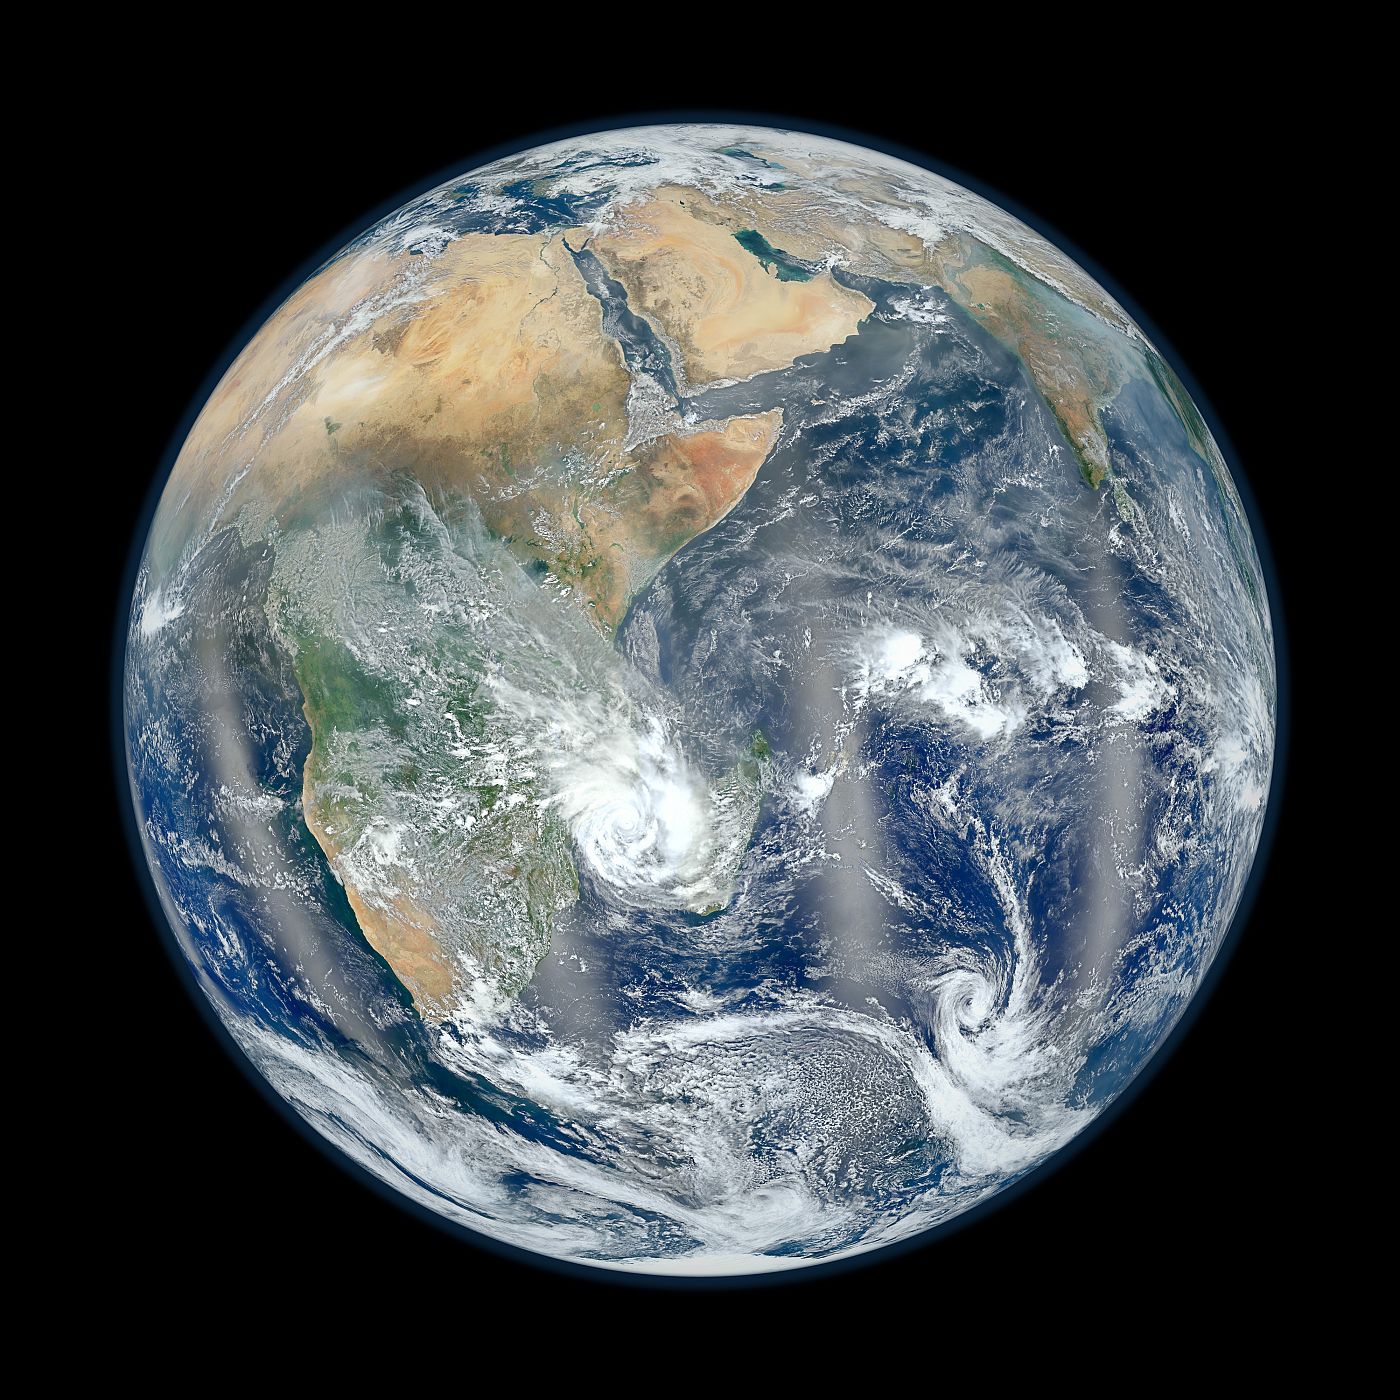 La NASA ha publicado una nueva versión de su popular 'Canica Azul', en esta ocasión con el continente africano y Asia como protagtonistas.